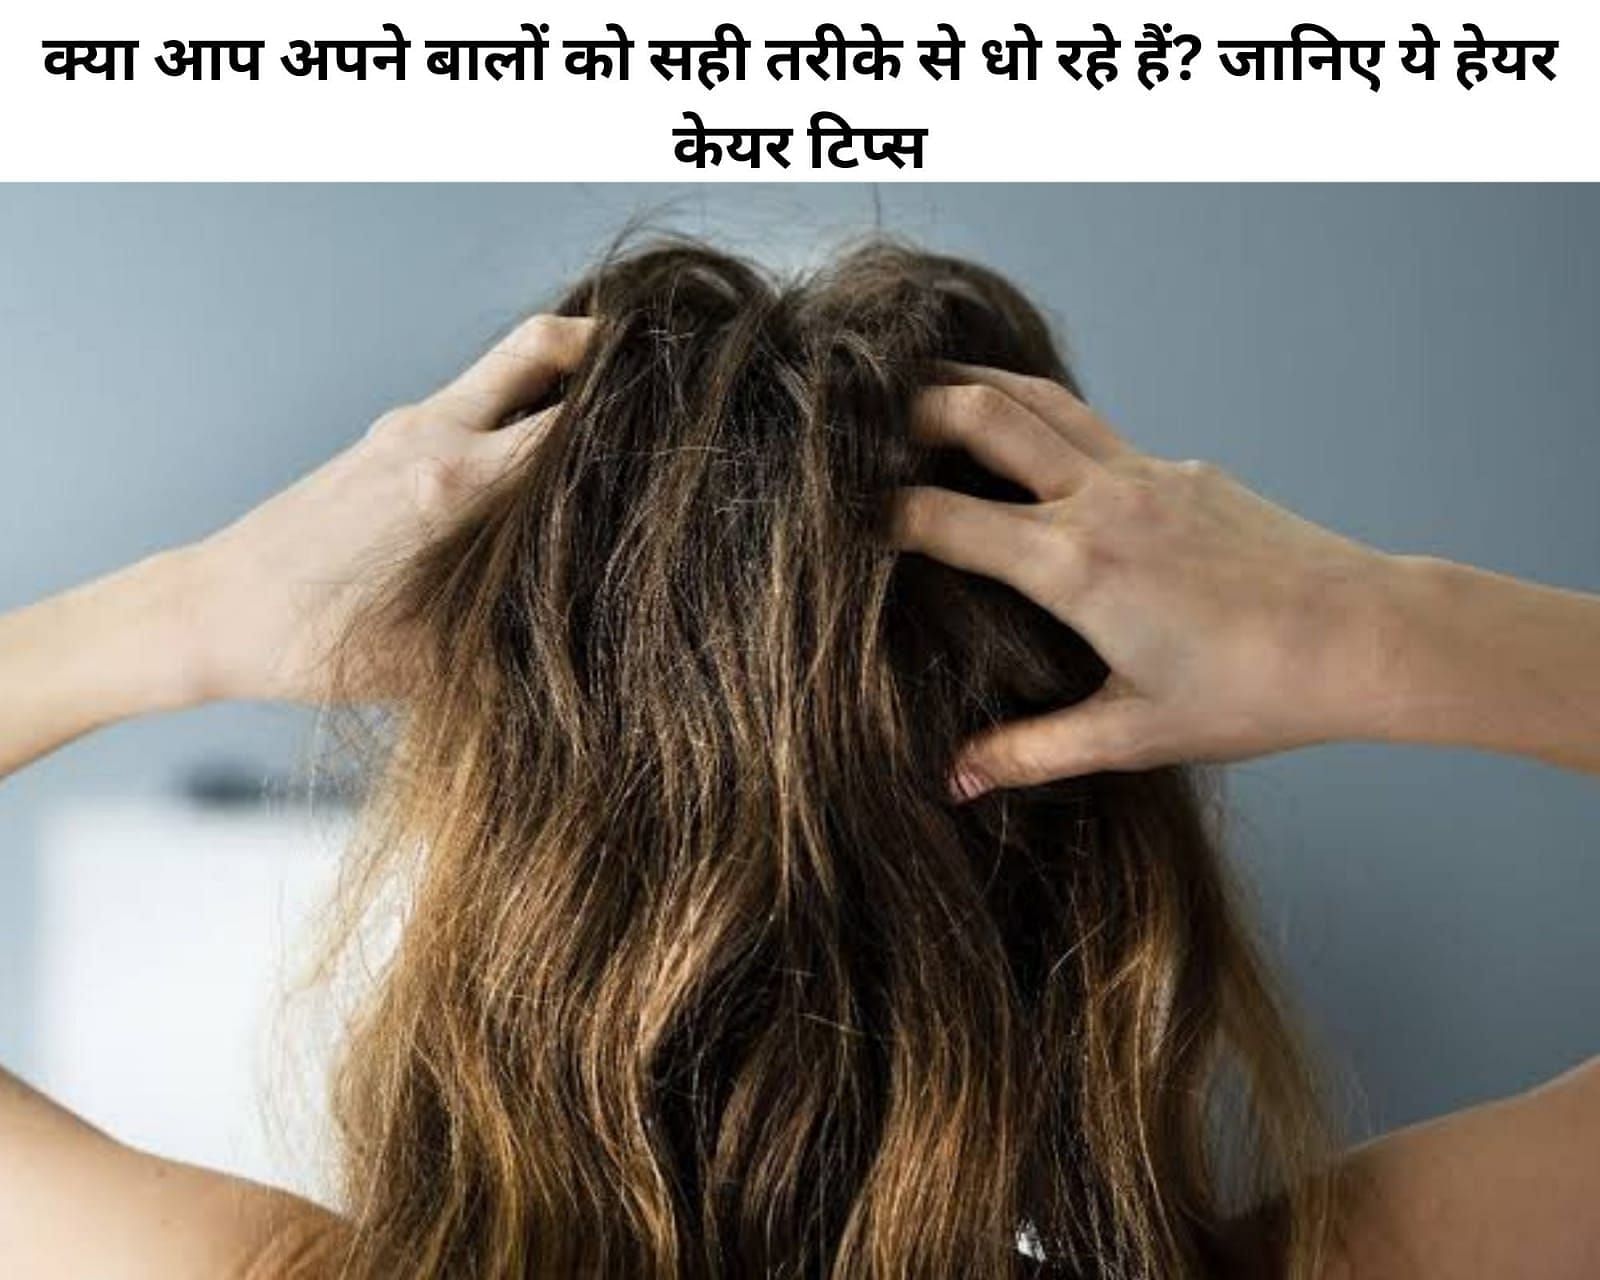 Best Price of Hair Smoothening in Delhi  Hair Rebonding Price in Delhi